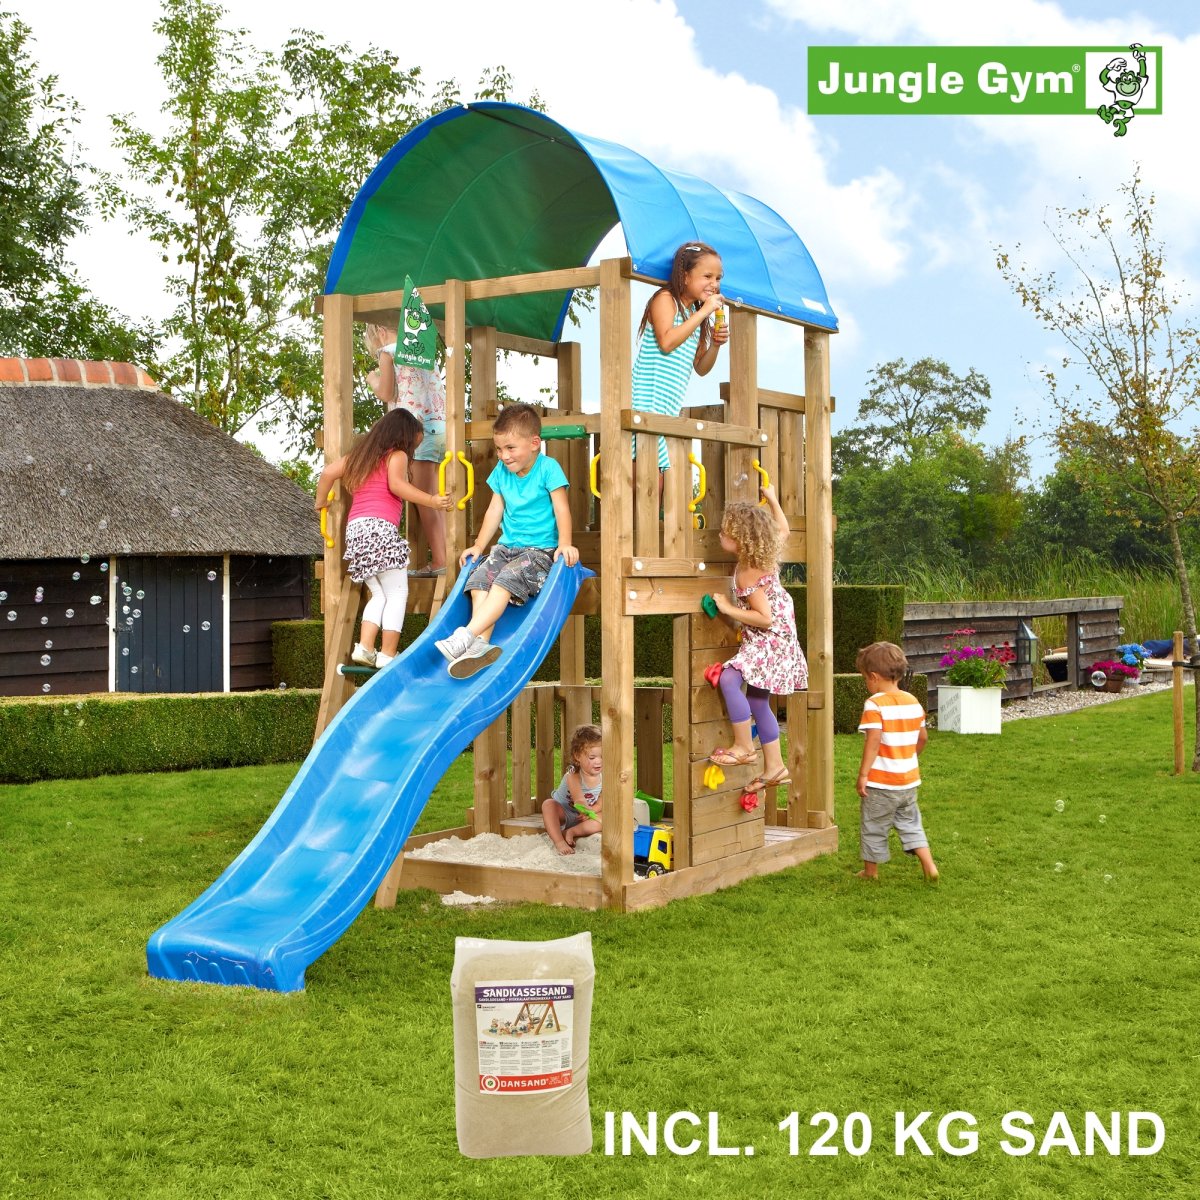 Jungle Gym Farm legetårn, sand og blå rutschebane